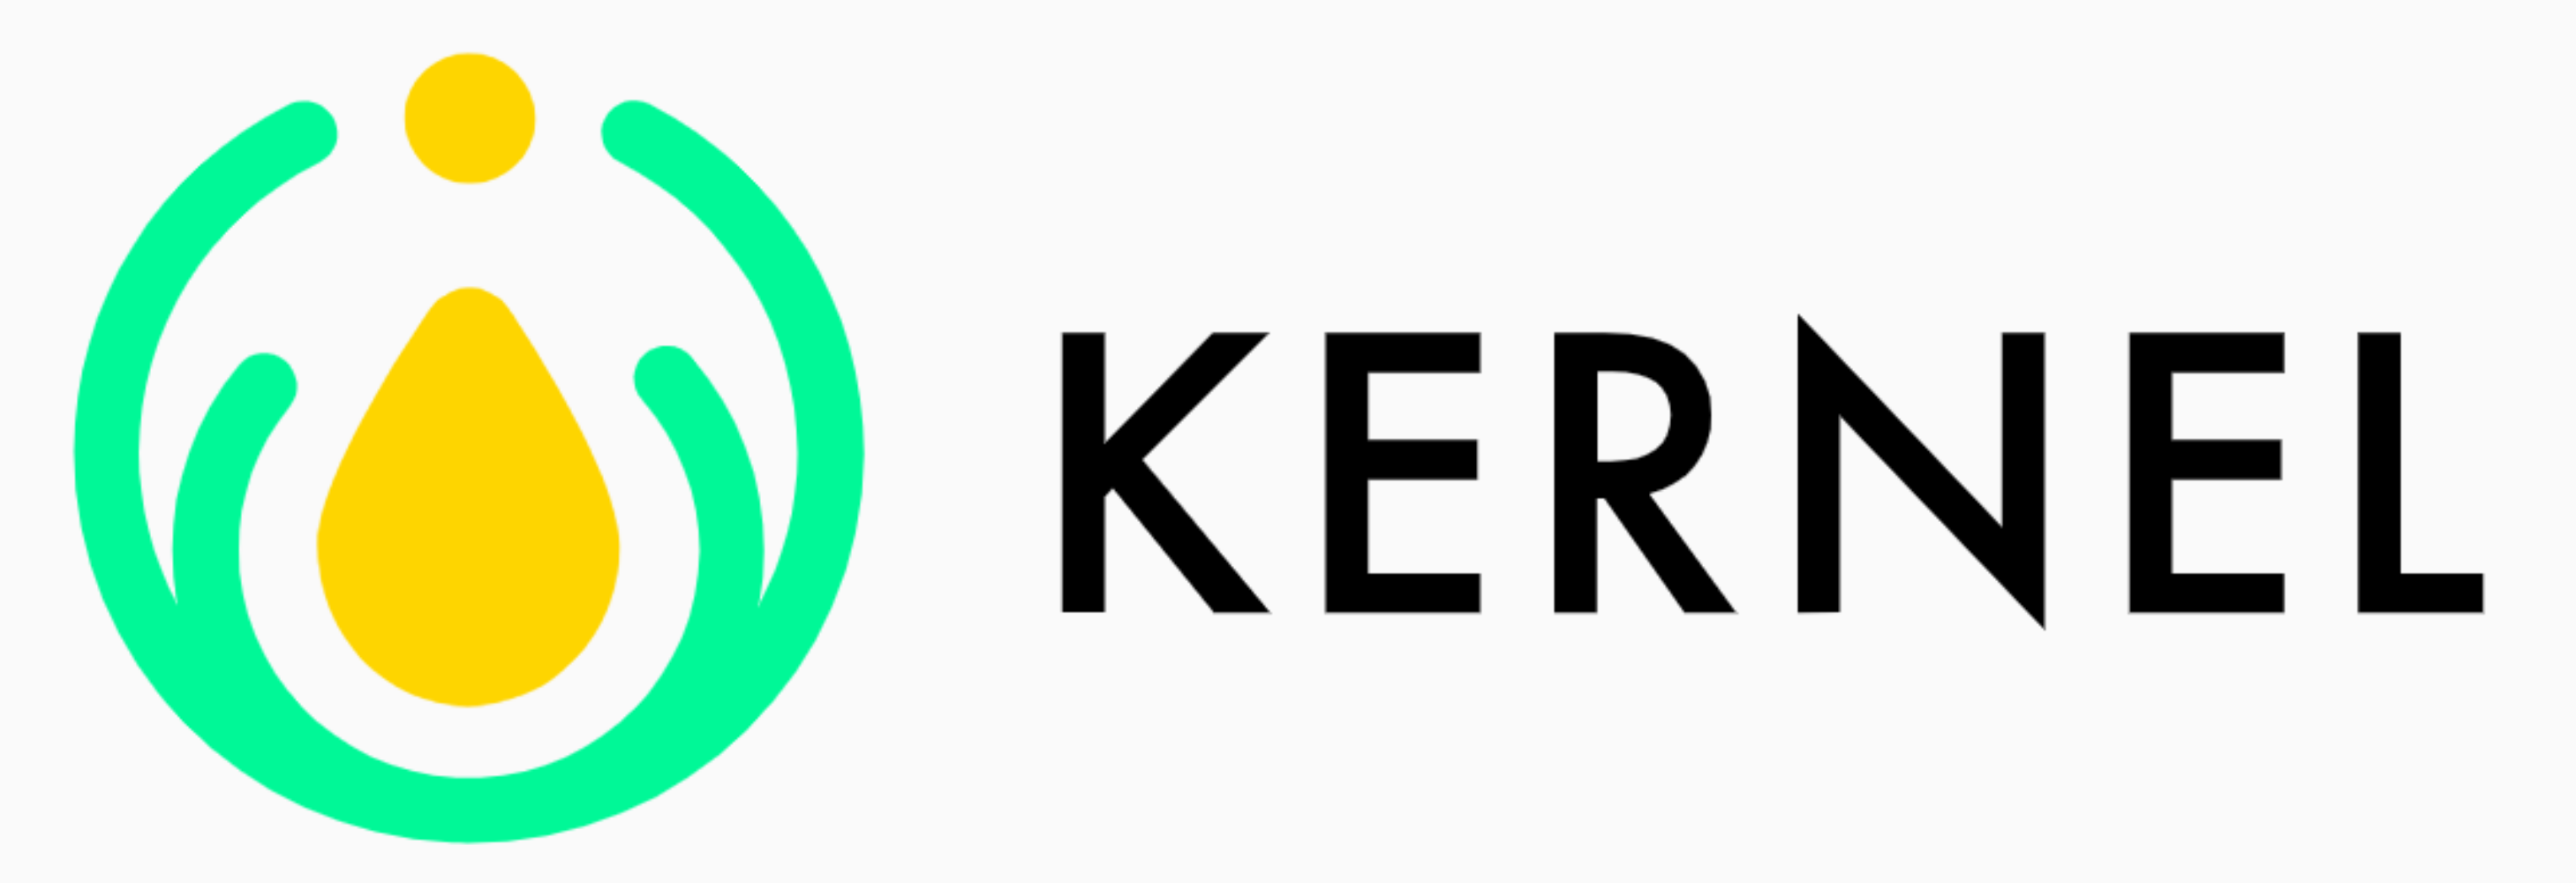 KERNEL at https://kernel.community